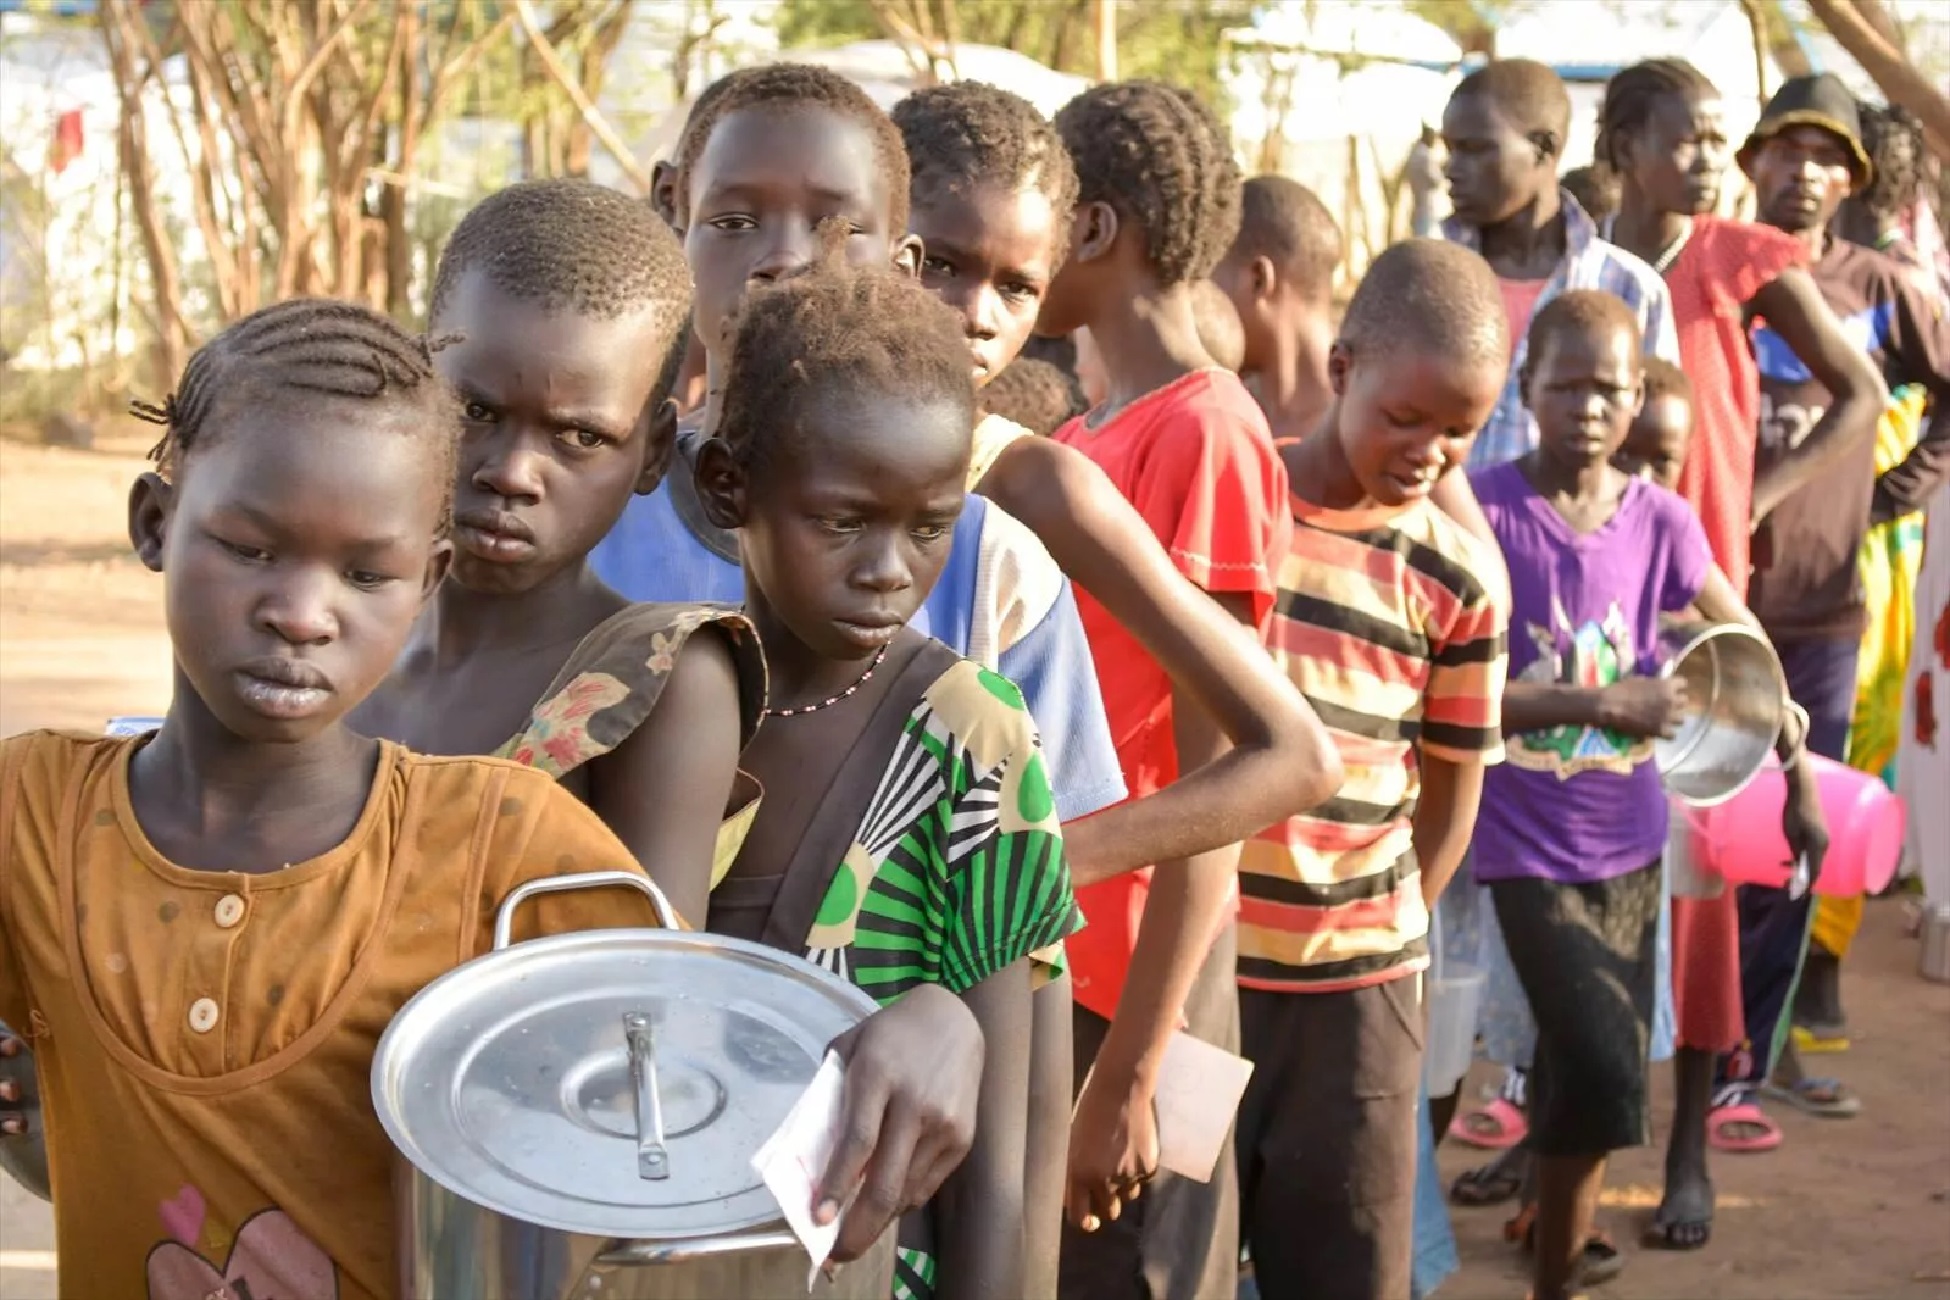 Ветка с голодом клуб. Южный Судан население 2021. Африканские дети голодают. Голодающие люди в Африке дети.